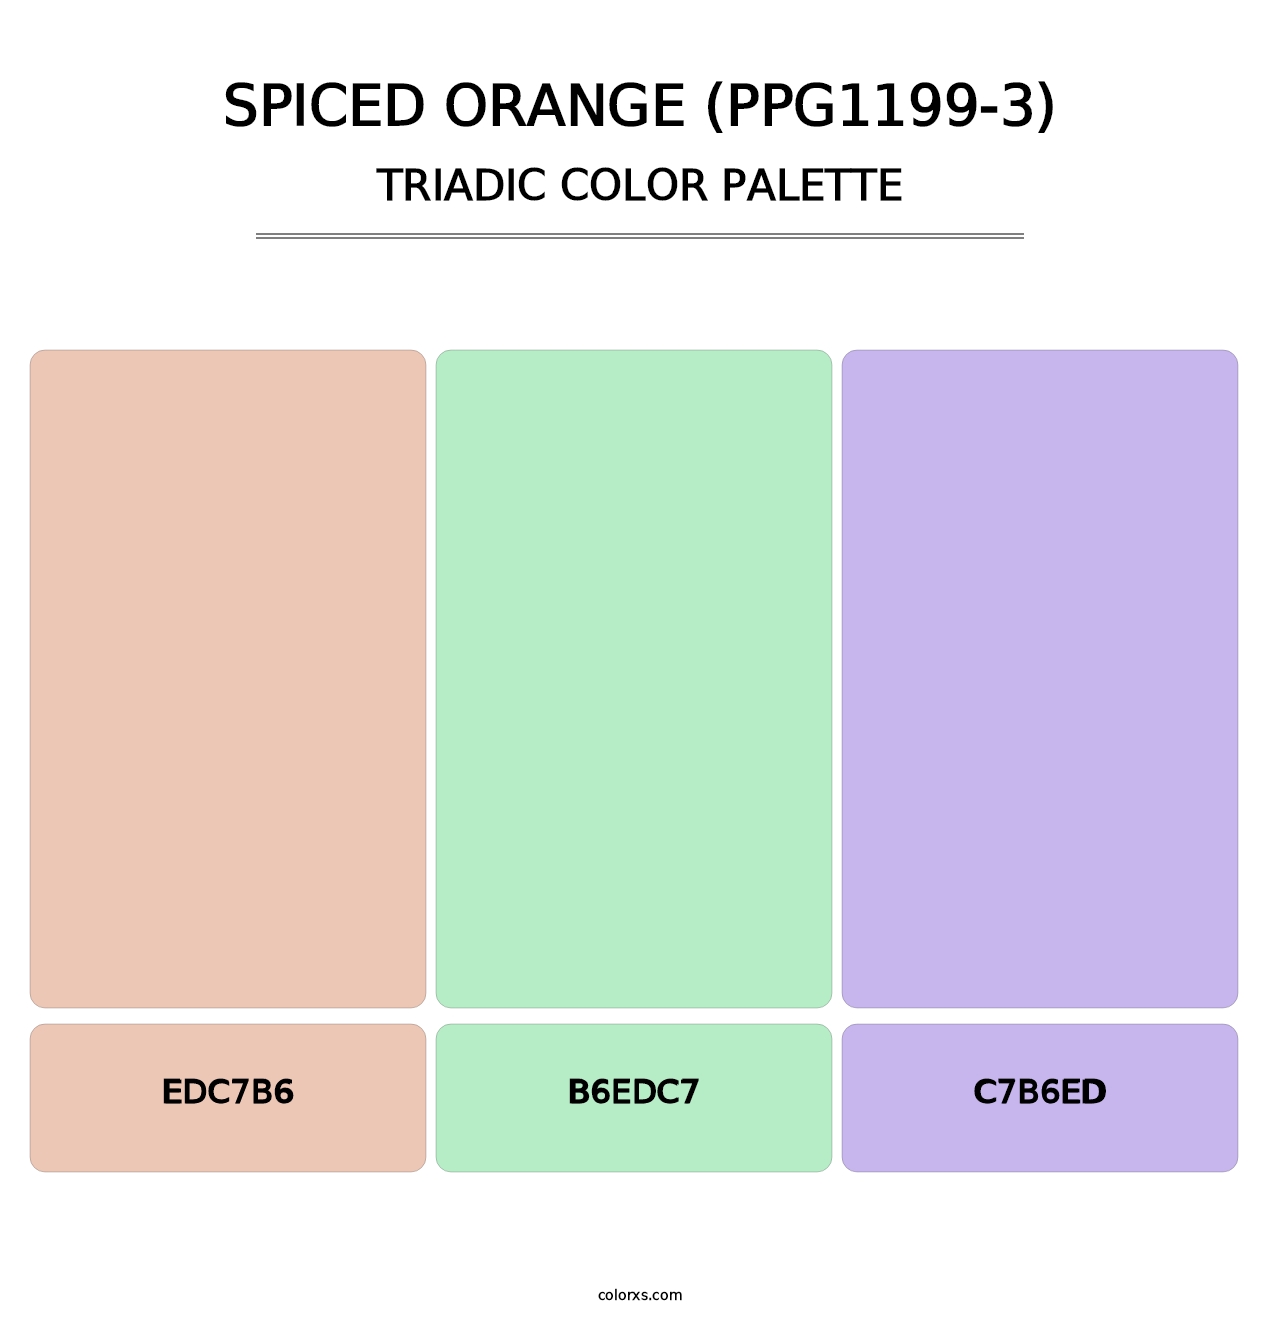 Spiced Orange (PPG1199-3) - Triadic Color Palette